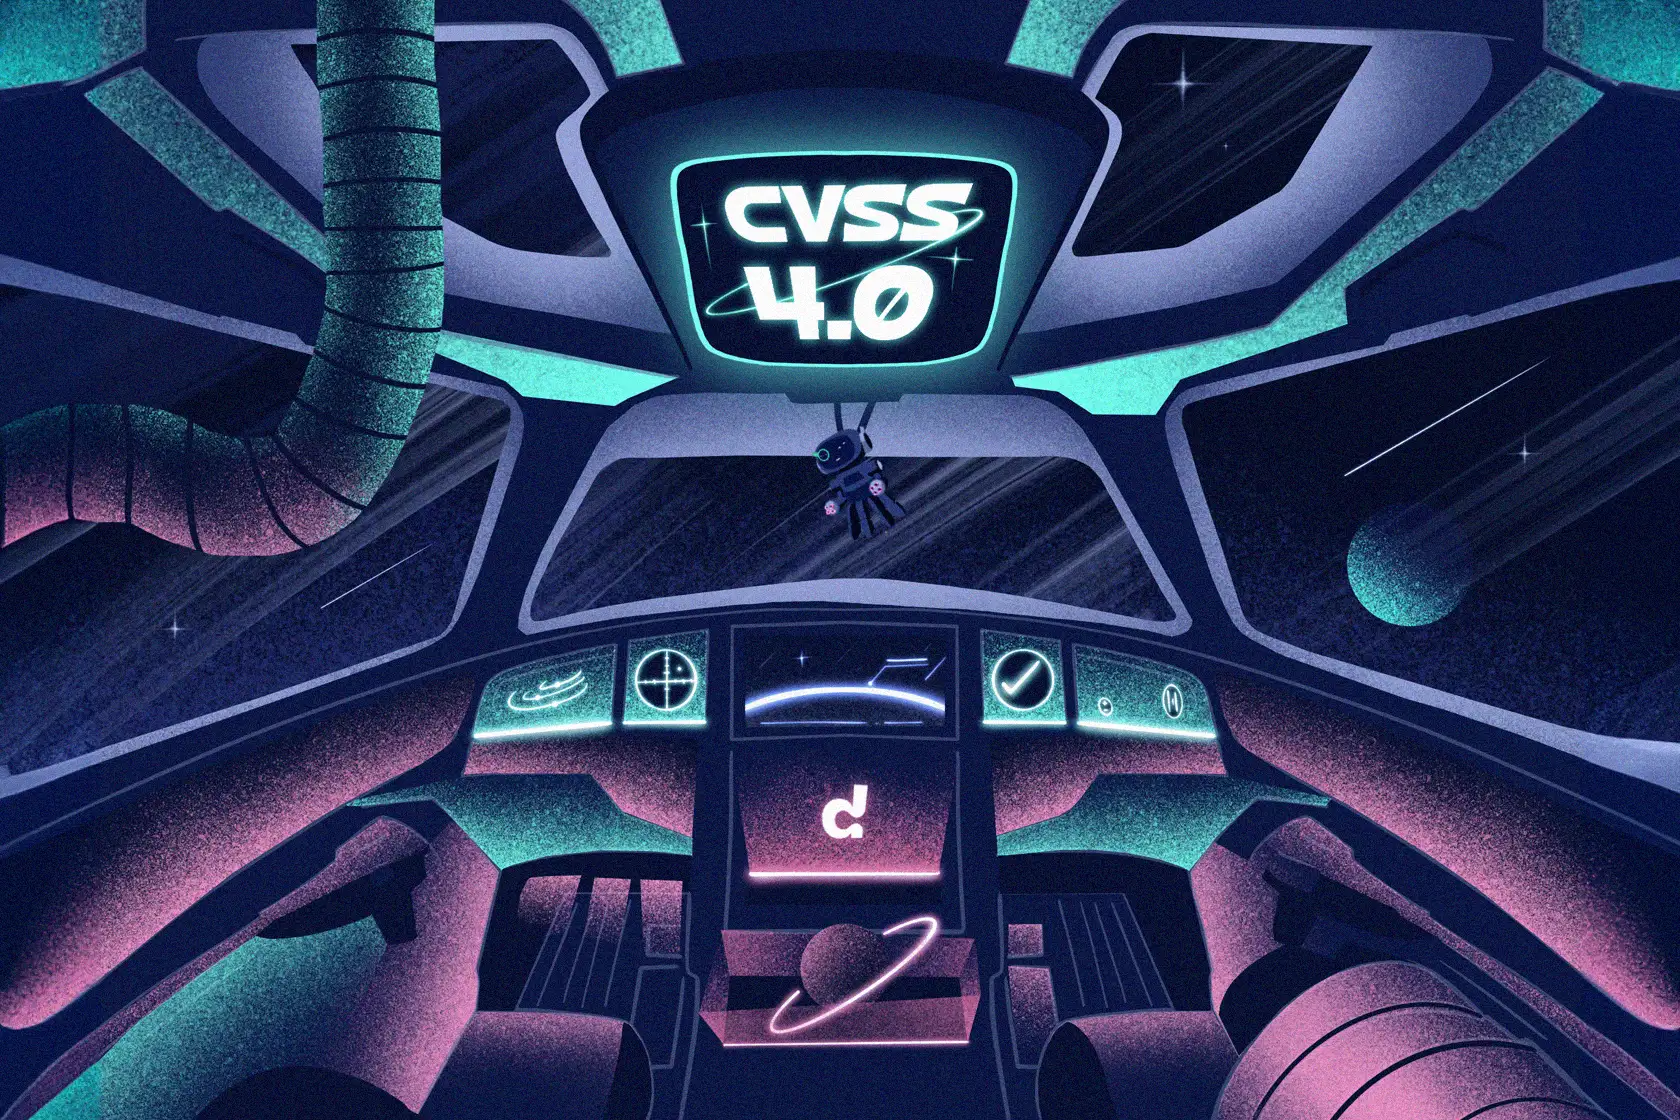 The CVSS score gets updated to CVSS v4.0